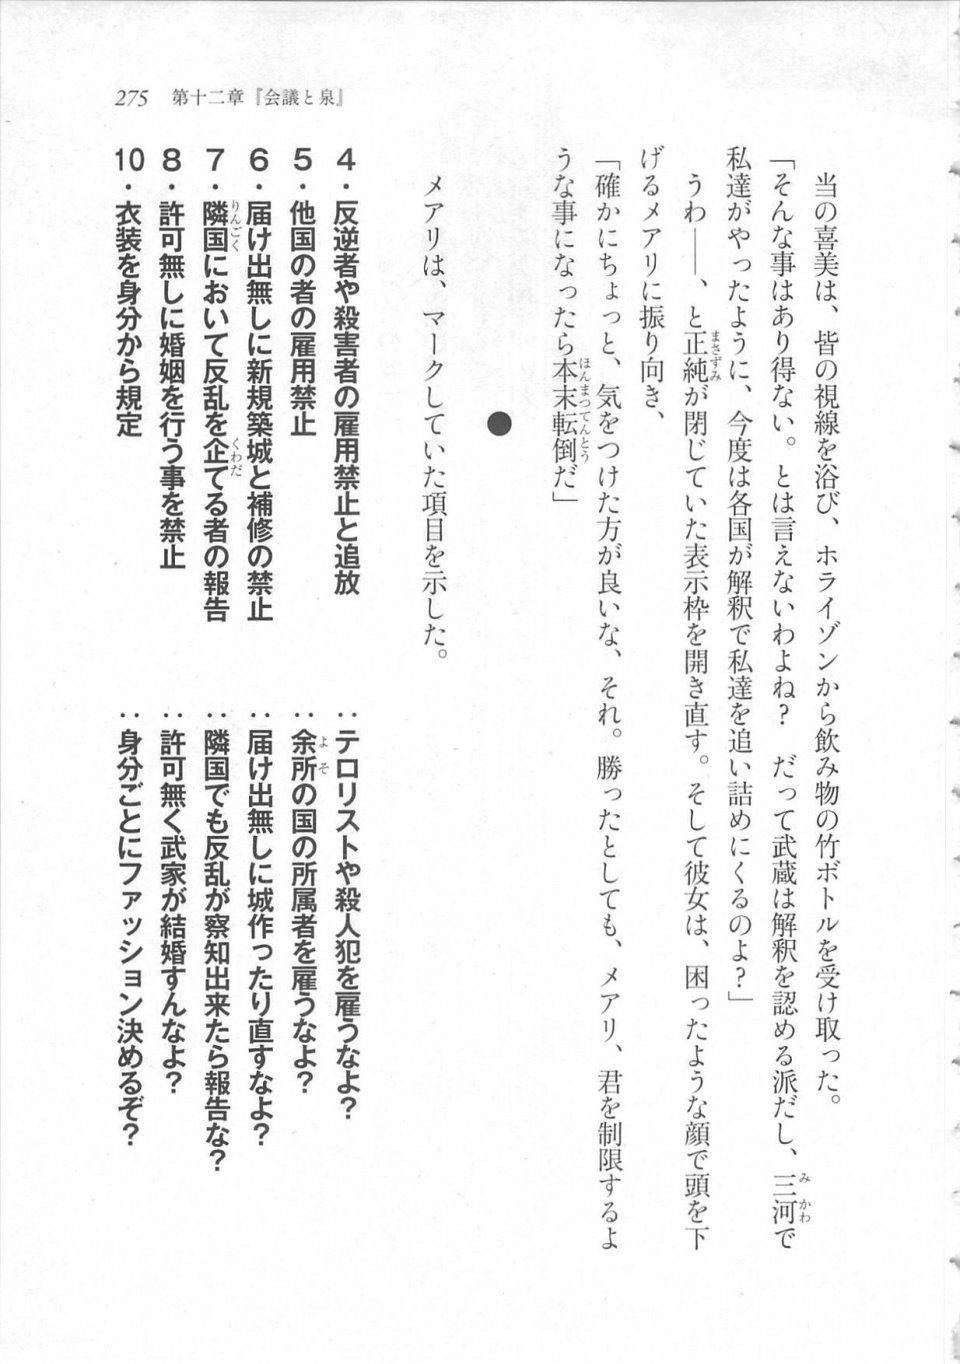 Kyoukai Senjou no Horizon LN Sidestory Vol 3 - Photo #279